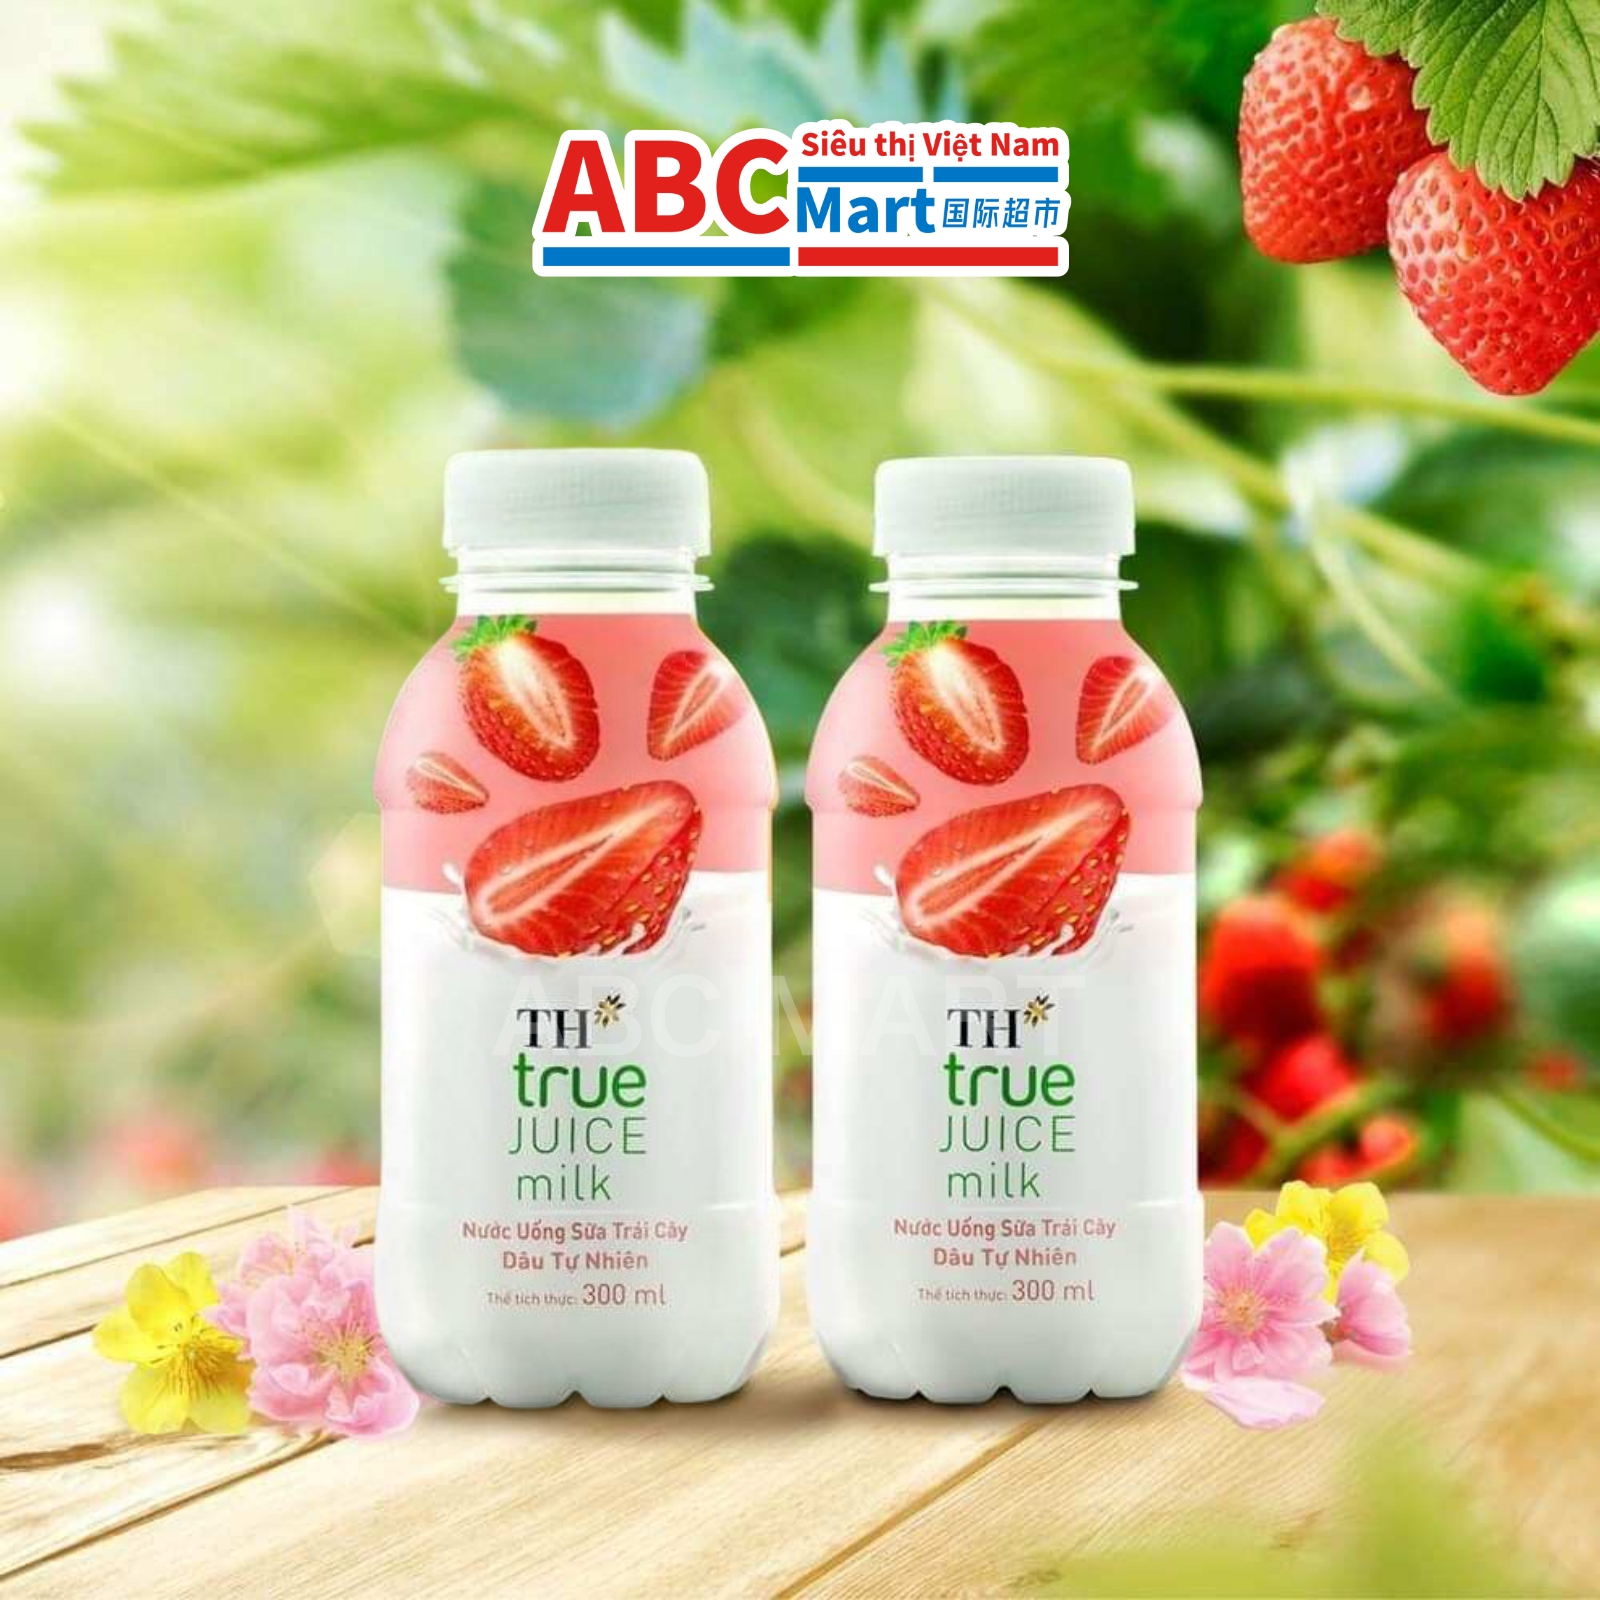 【Việt Nam-Sữa Trái Cây TH True Juice Milk 300ml】真果汁草莓牛奶-ABCMart 国际超市